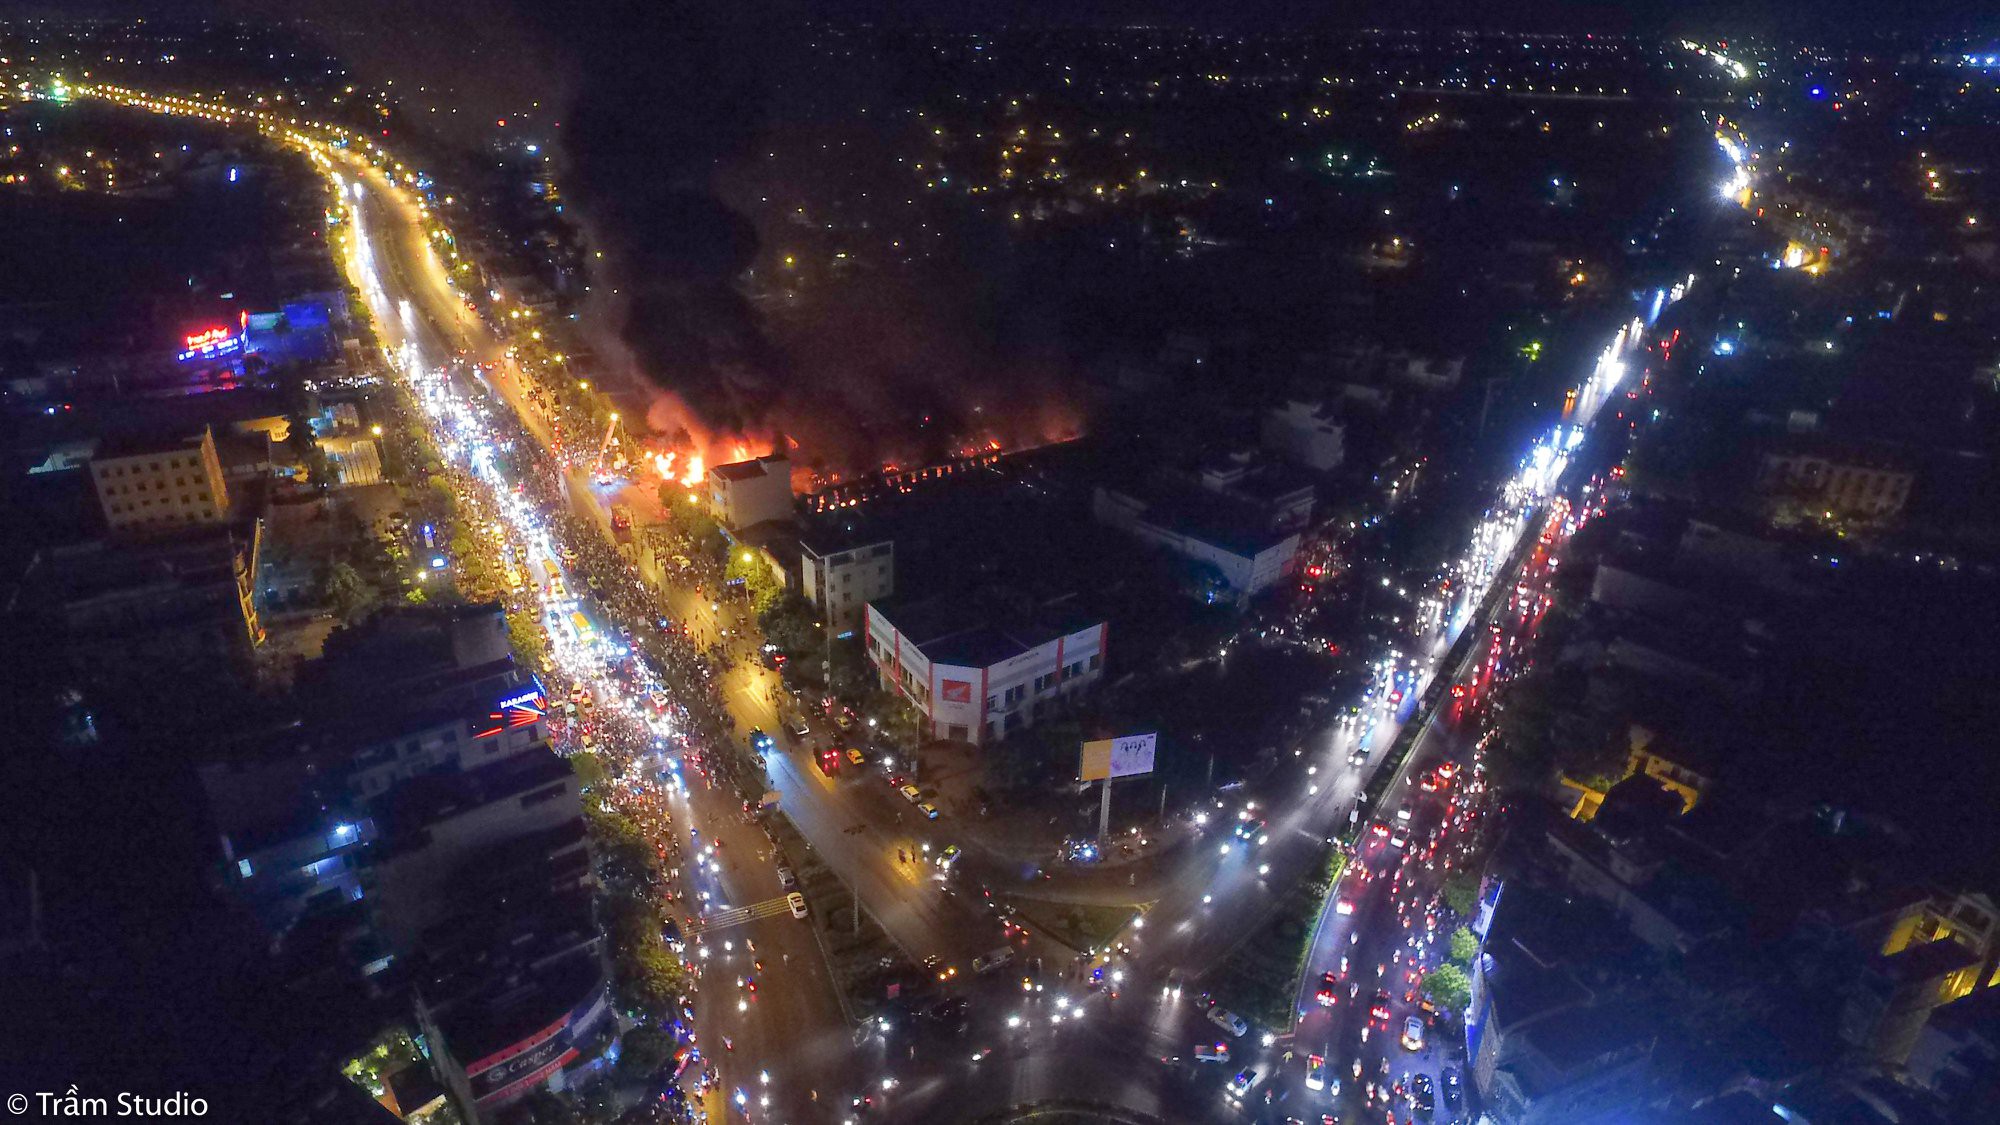 Toàn cảnh đám cháy ngùn ngụt chợ Gạo ở thành phố Hưng Yên nhìn từ trên cao - Ảnh 5.